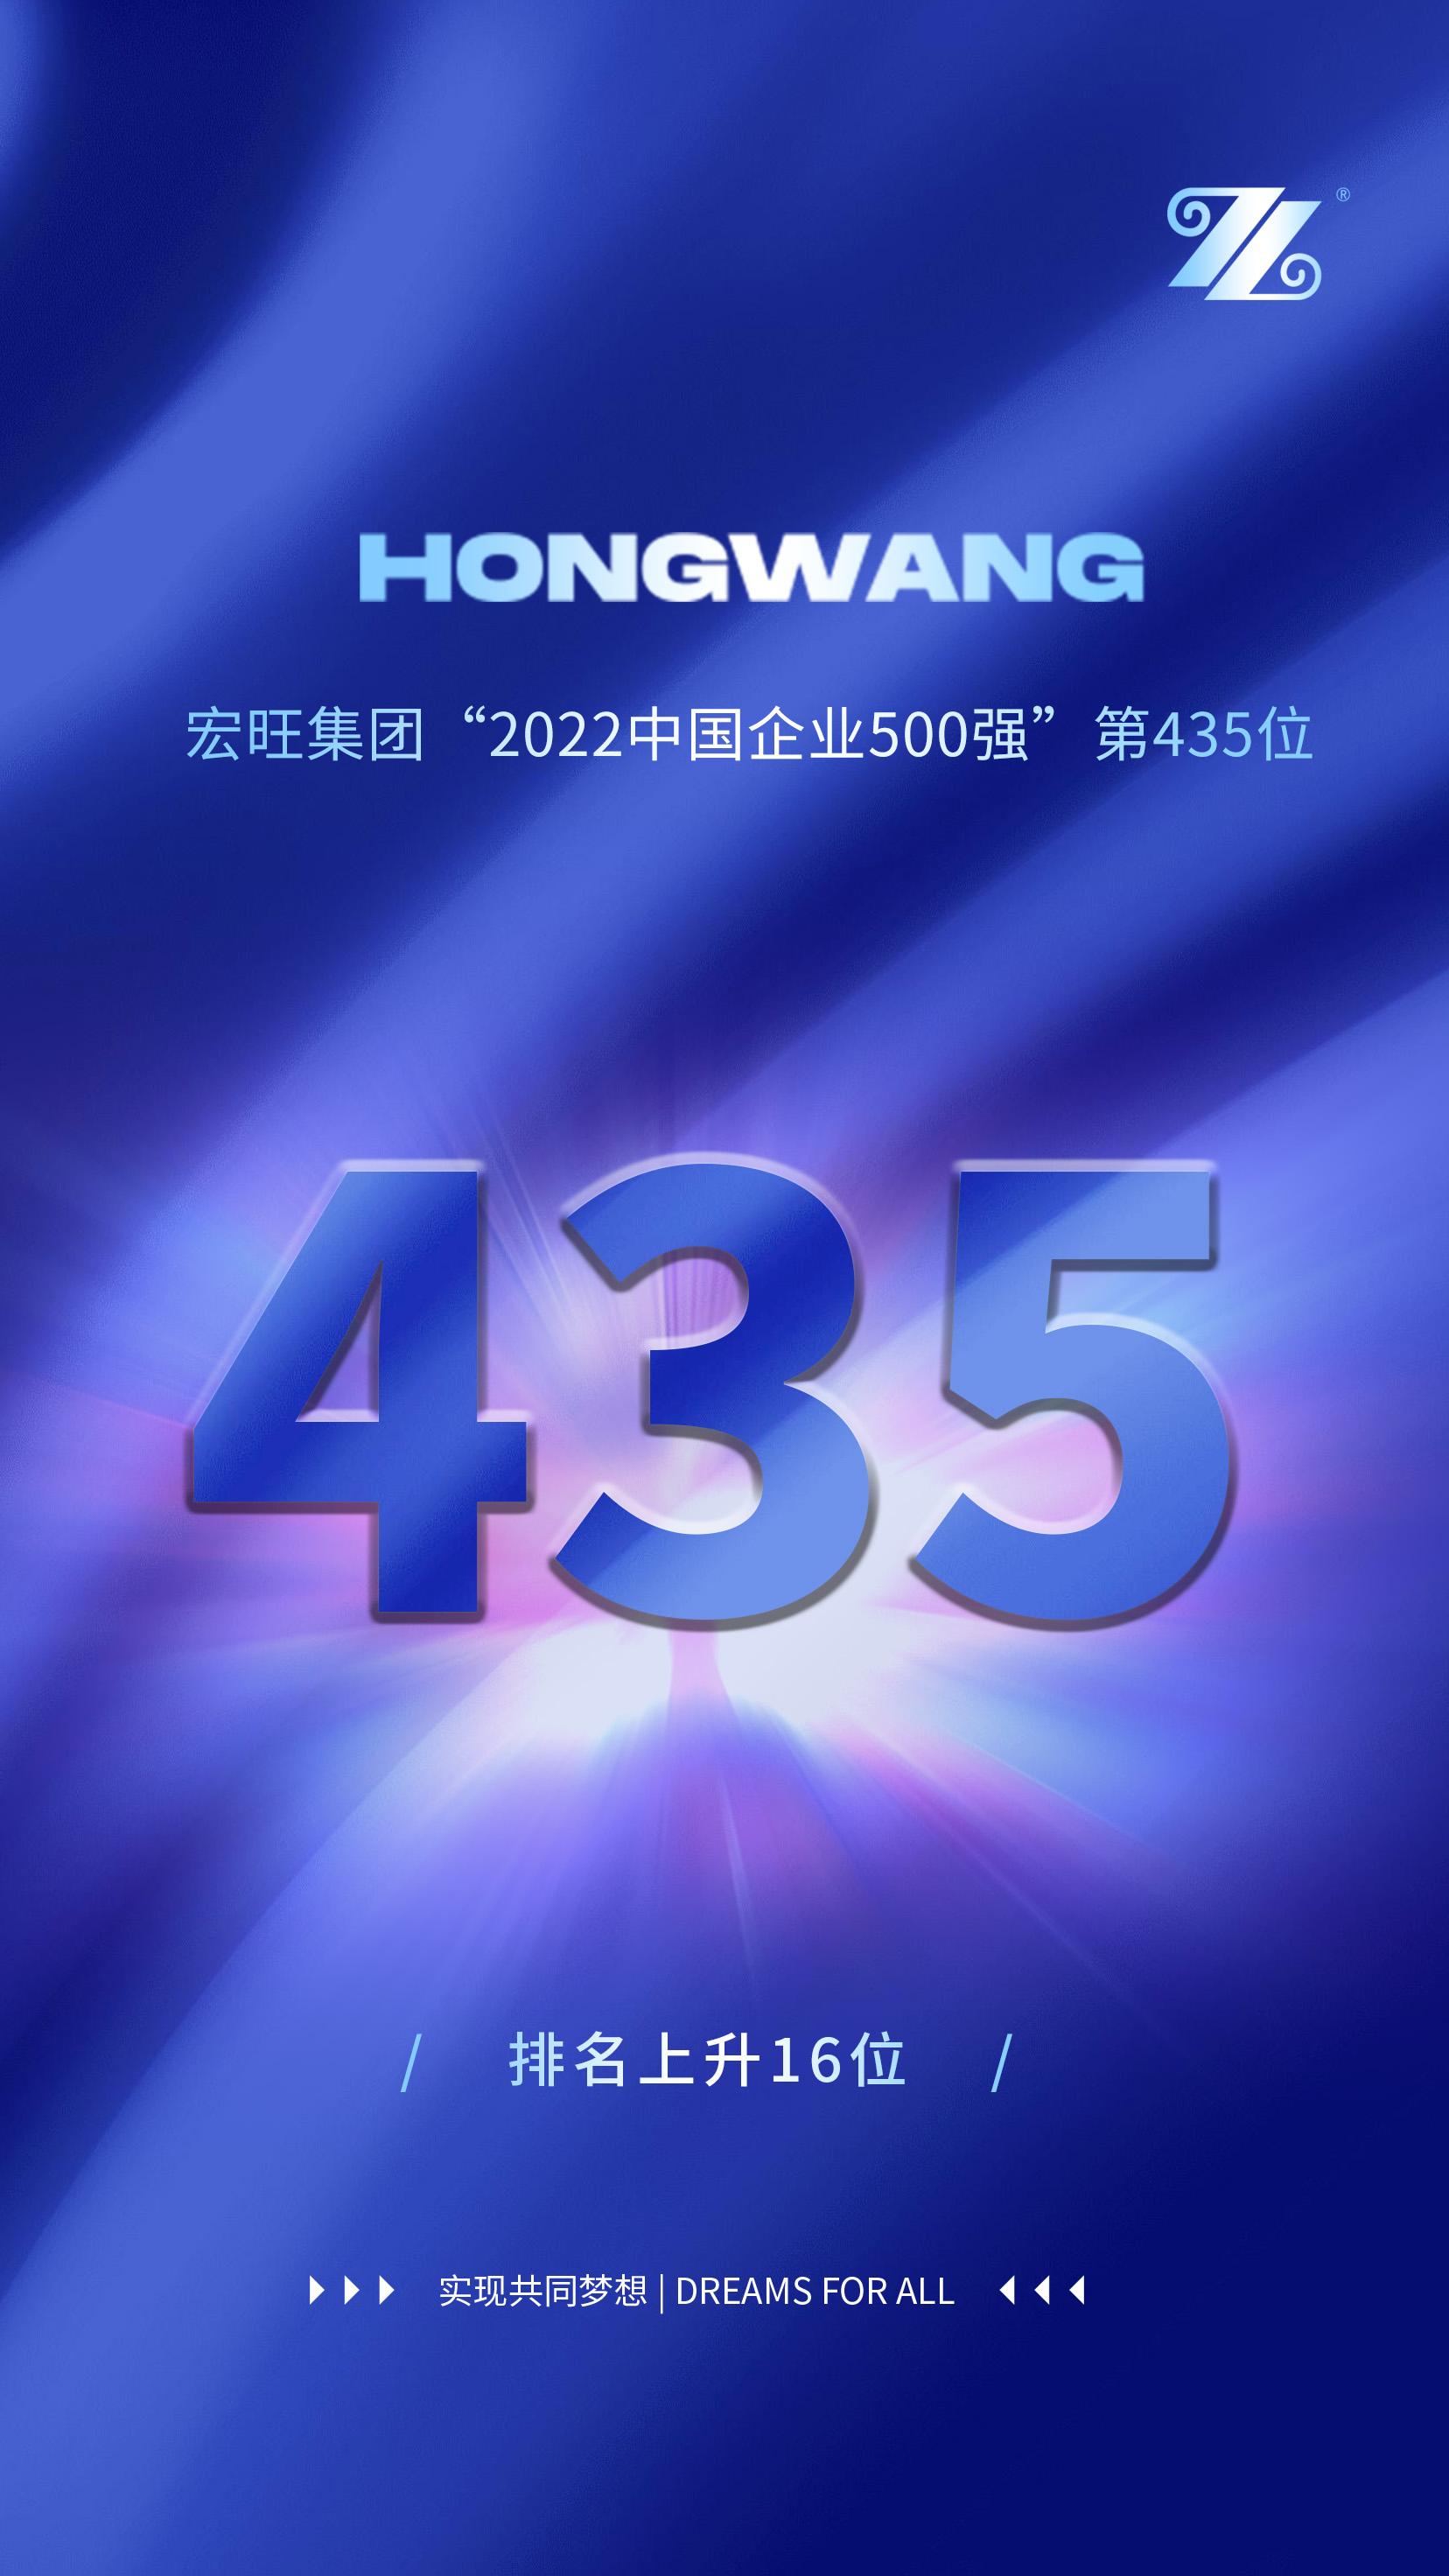 热烈祝贺香港精英论坛三中三位列“2022中国企业500强”第435位